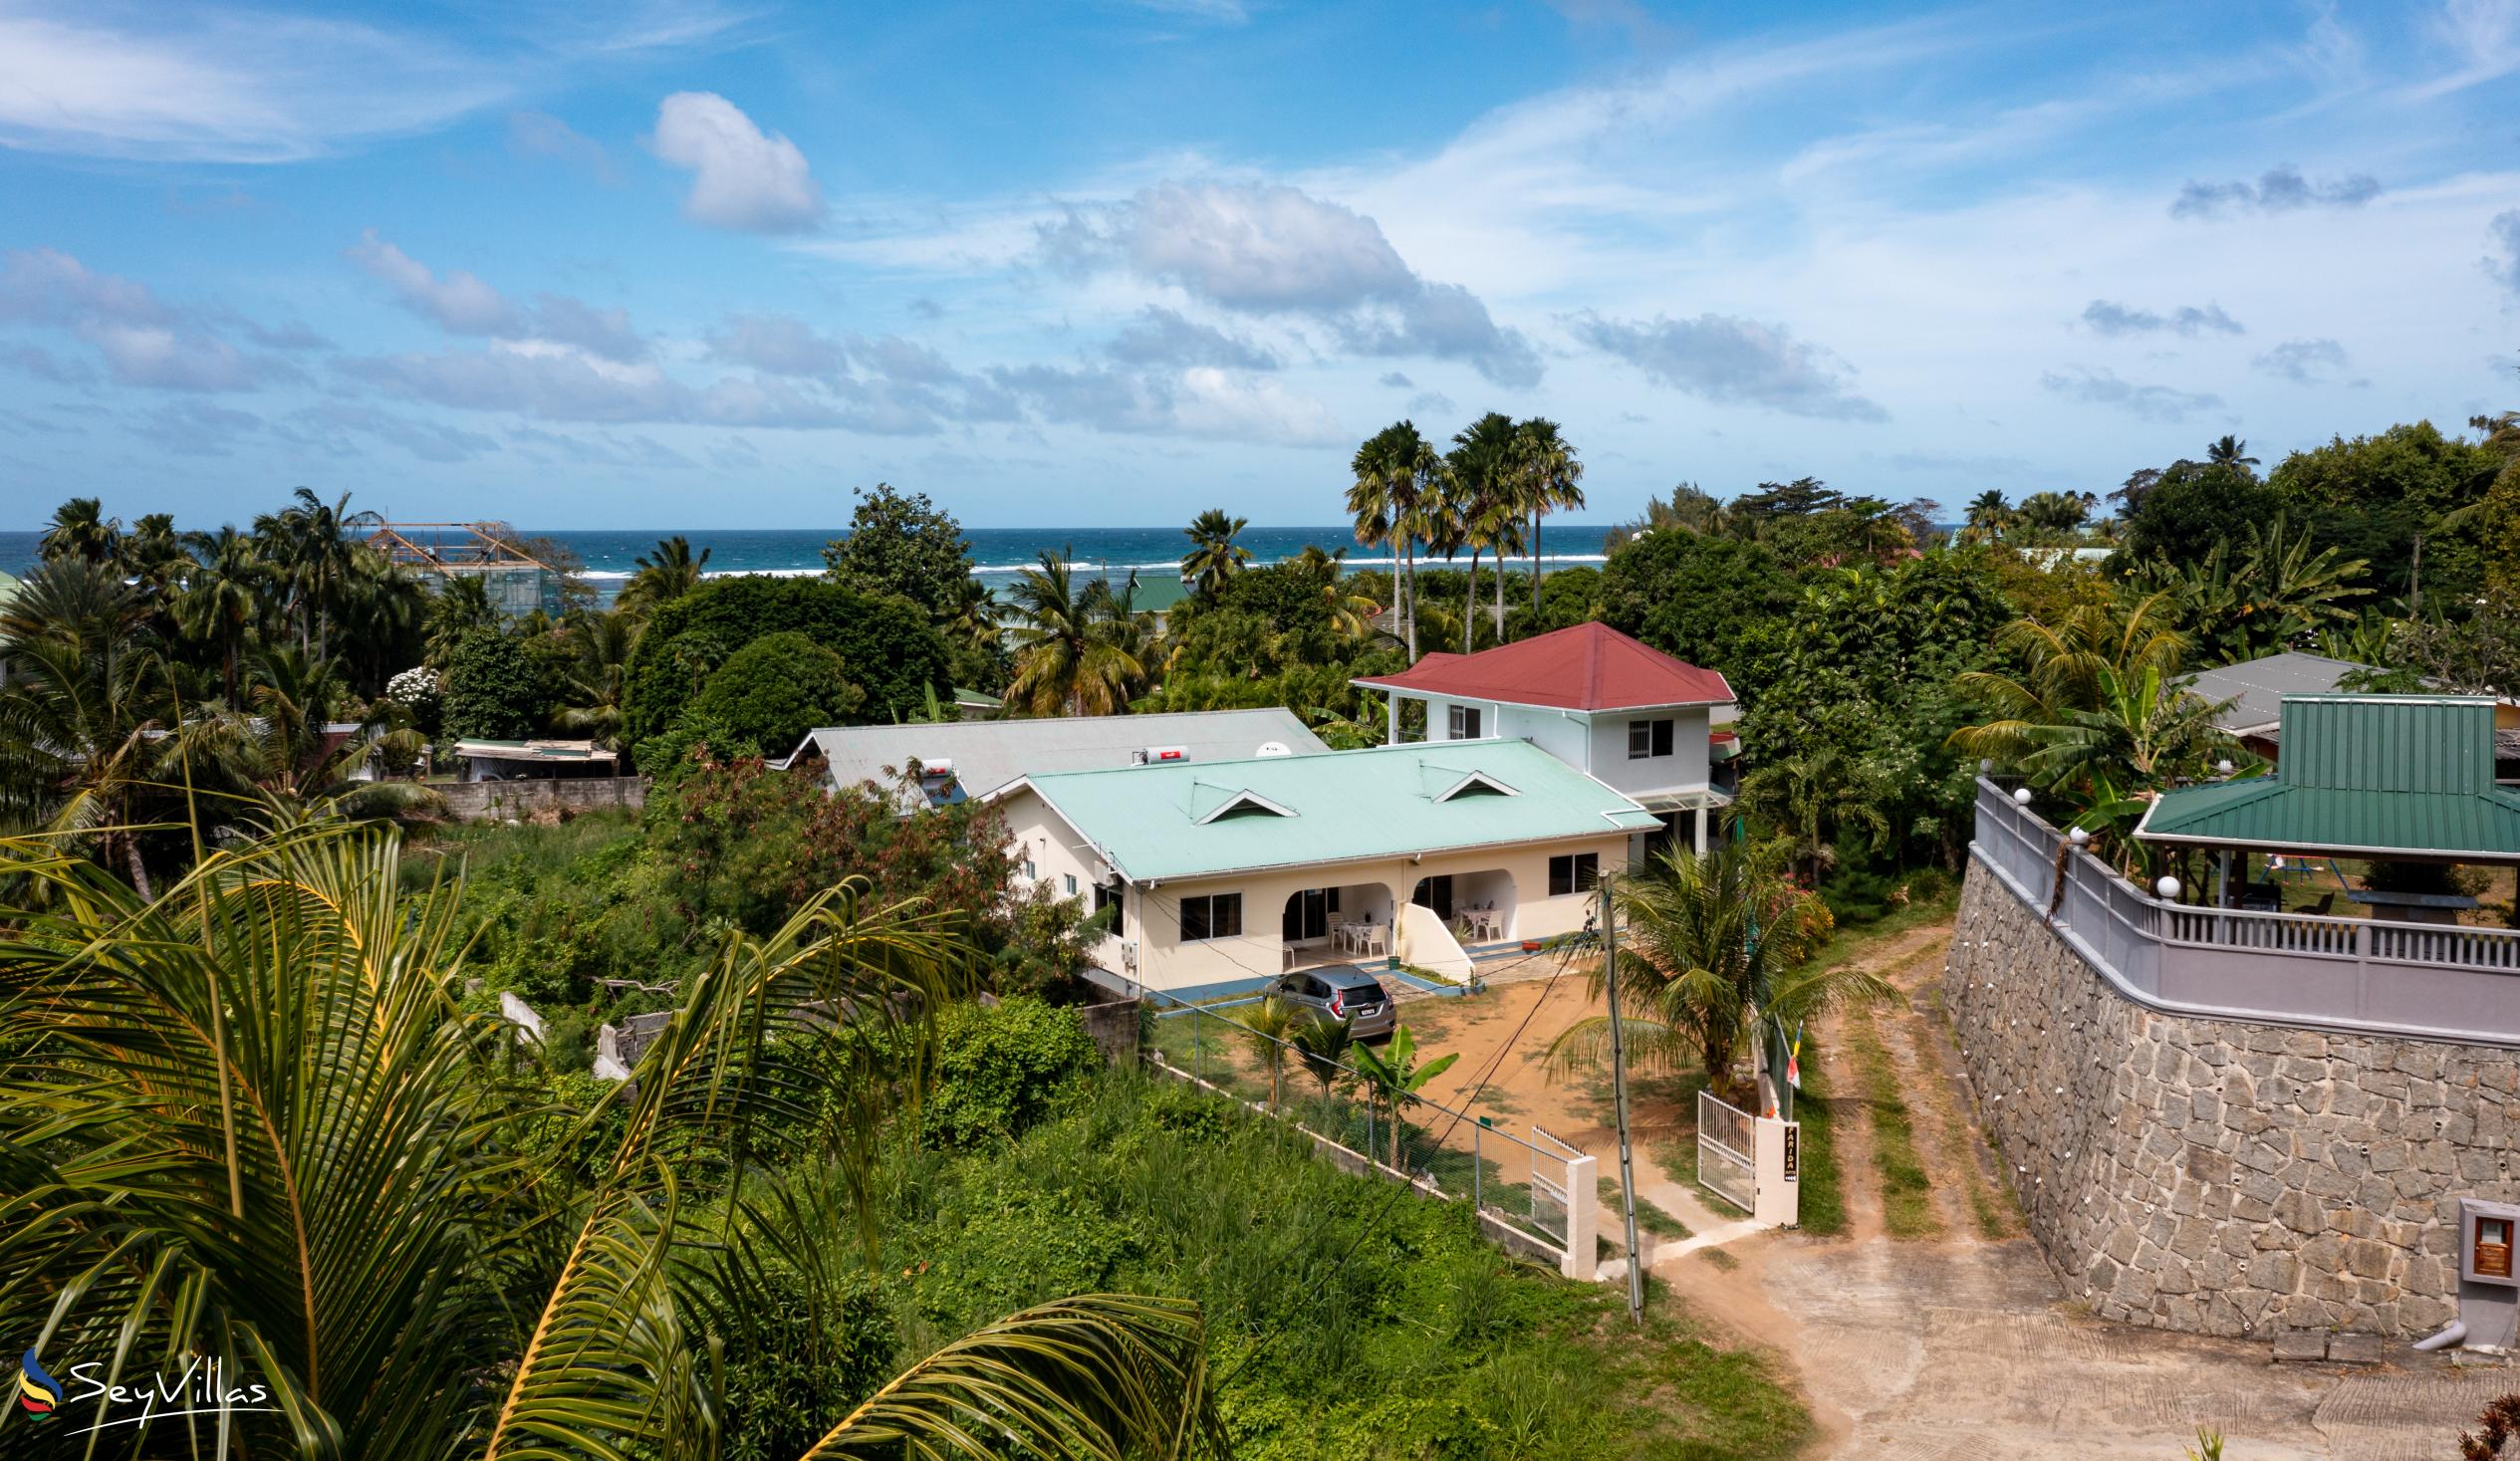 Photo 1: Farida Apartments - Outdoor area - Mahé (Seychelles)